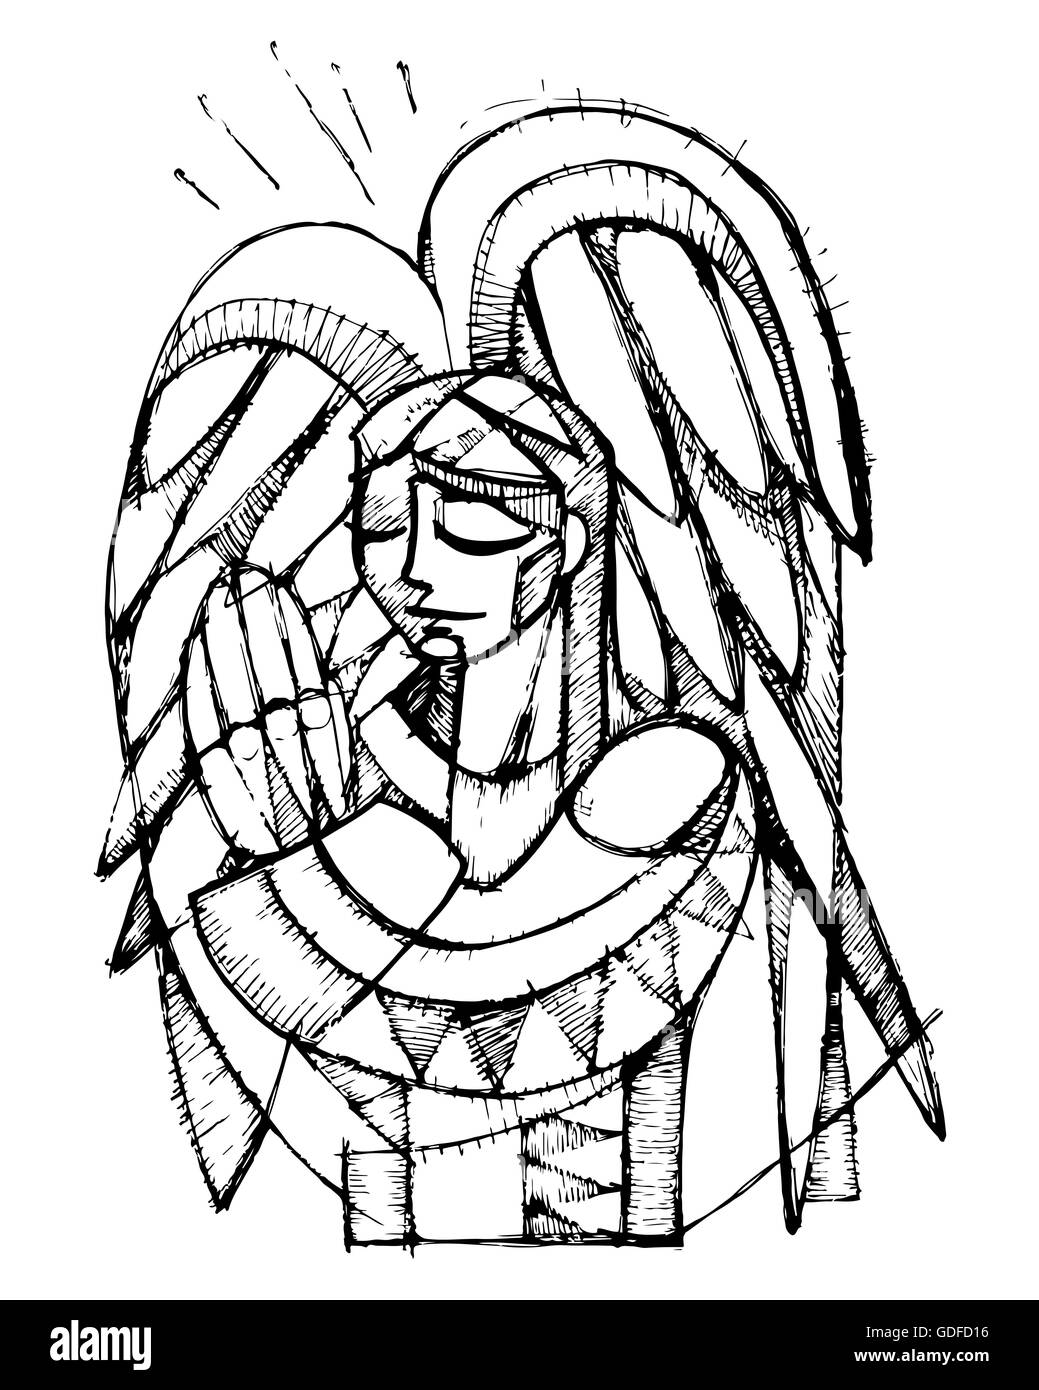 Hand drawn vector illustration ou dessin d'un ange gardien priant Banque D'Images